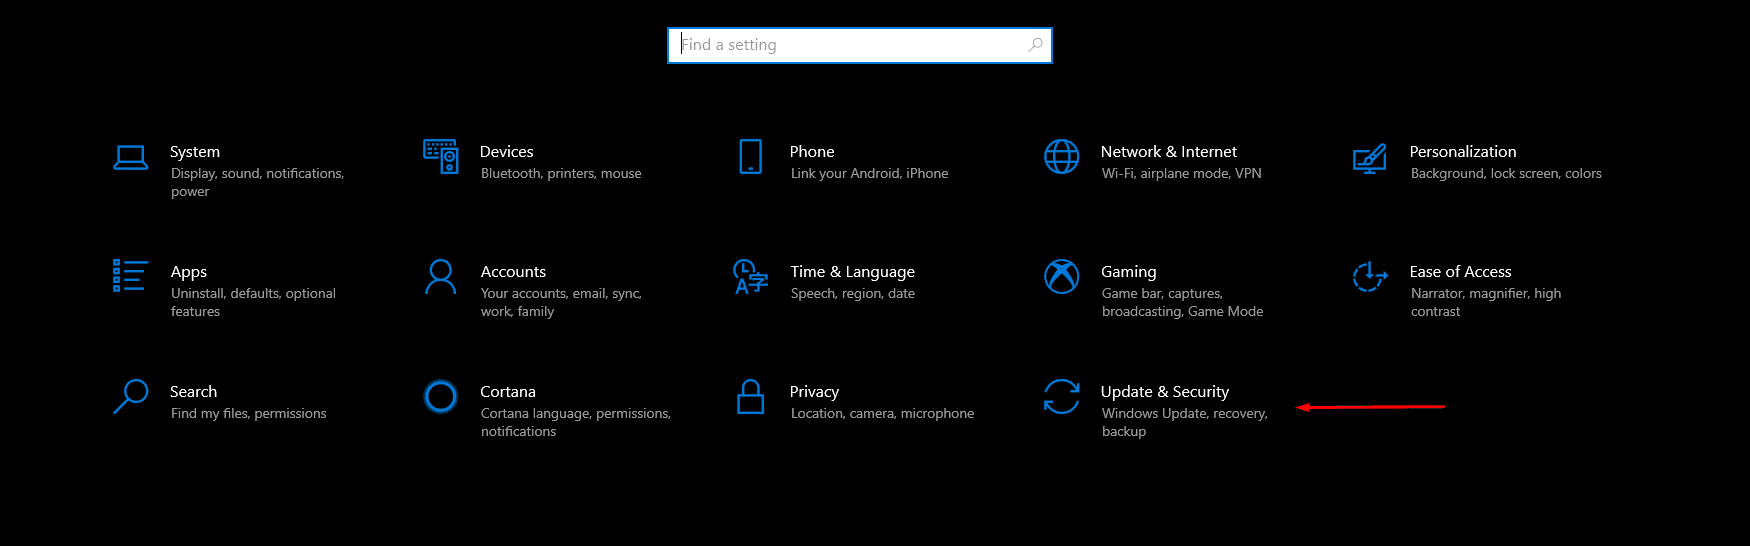 Hướng dẫn tắt thông báo khởi động lại máy tính Windows 10 sau cập nhật